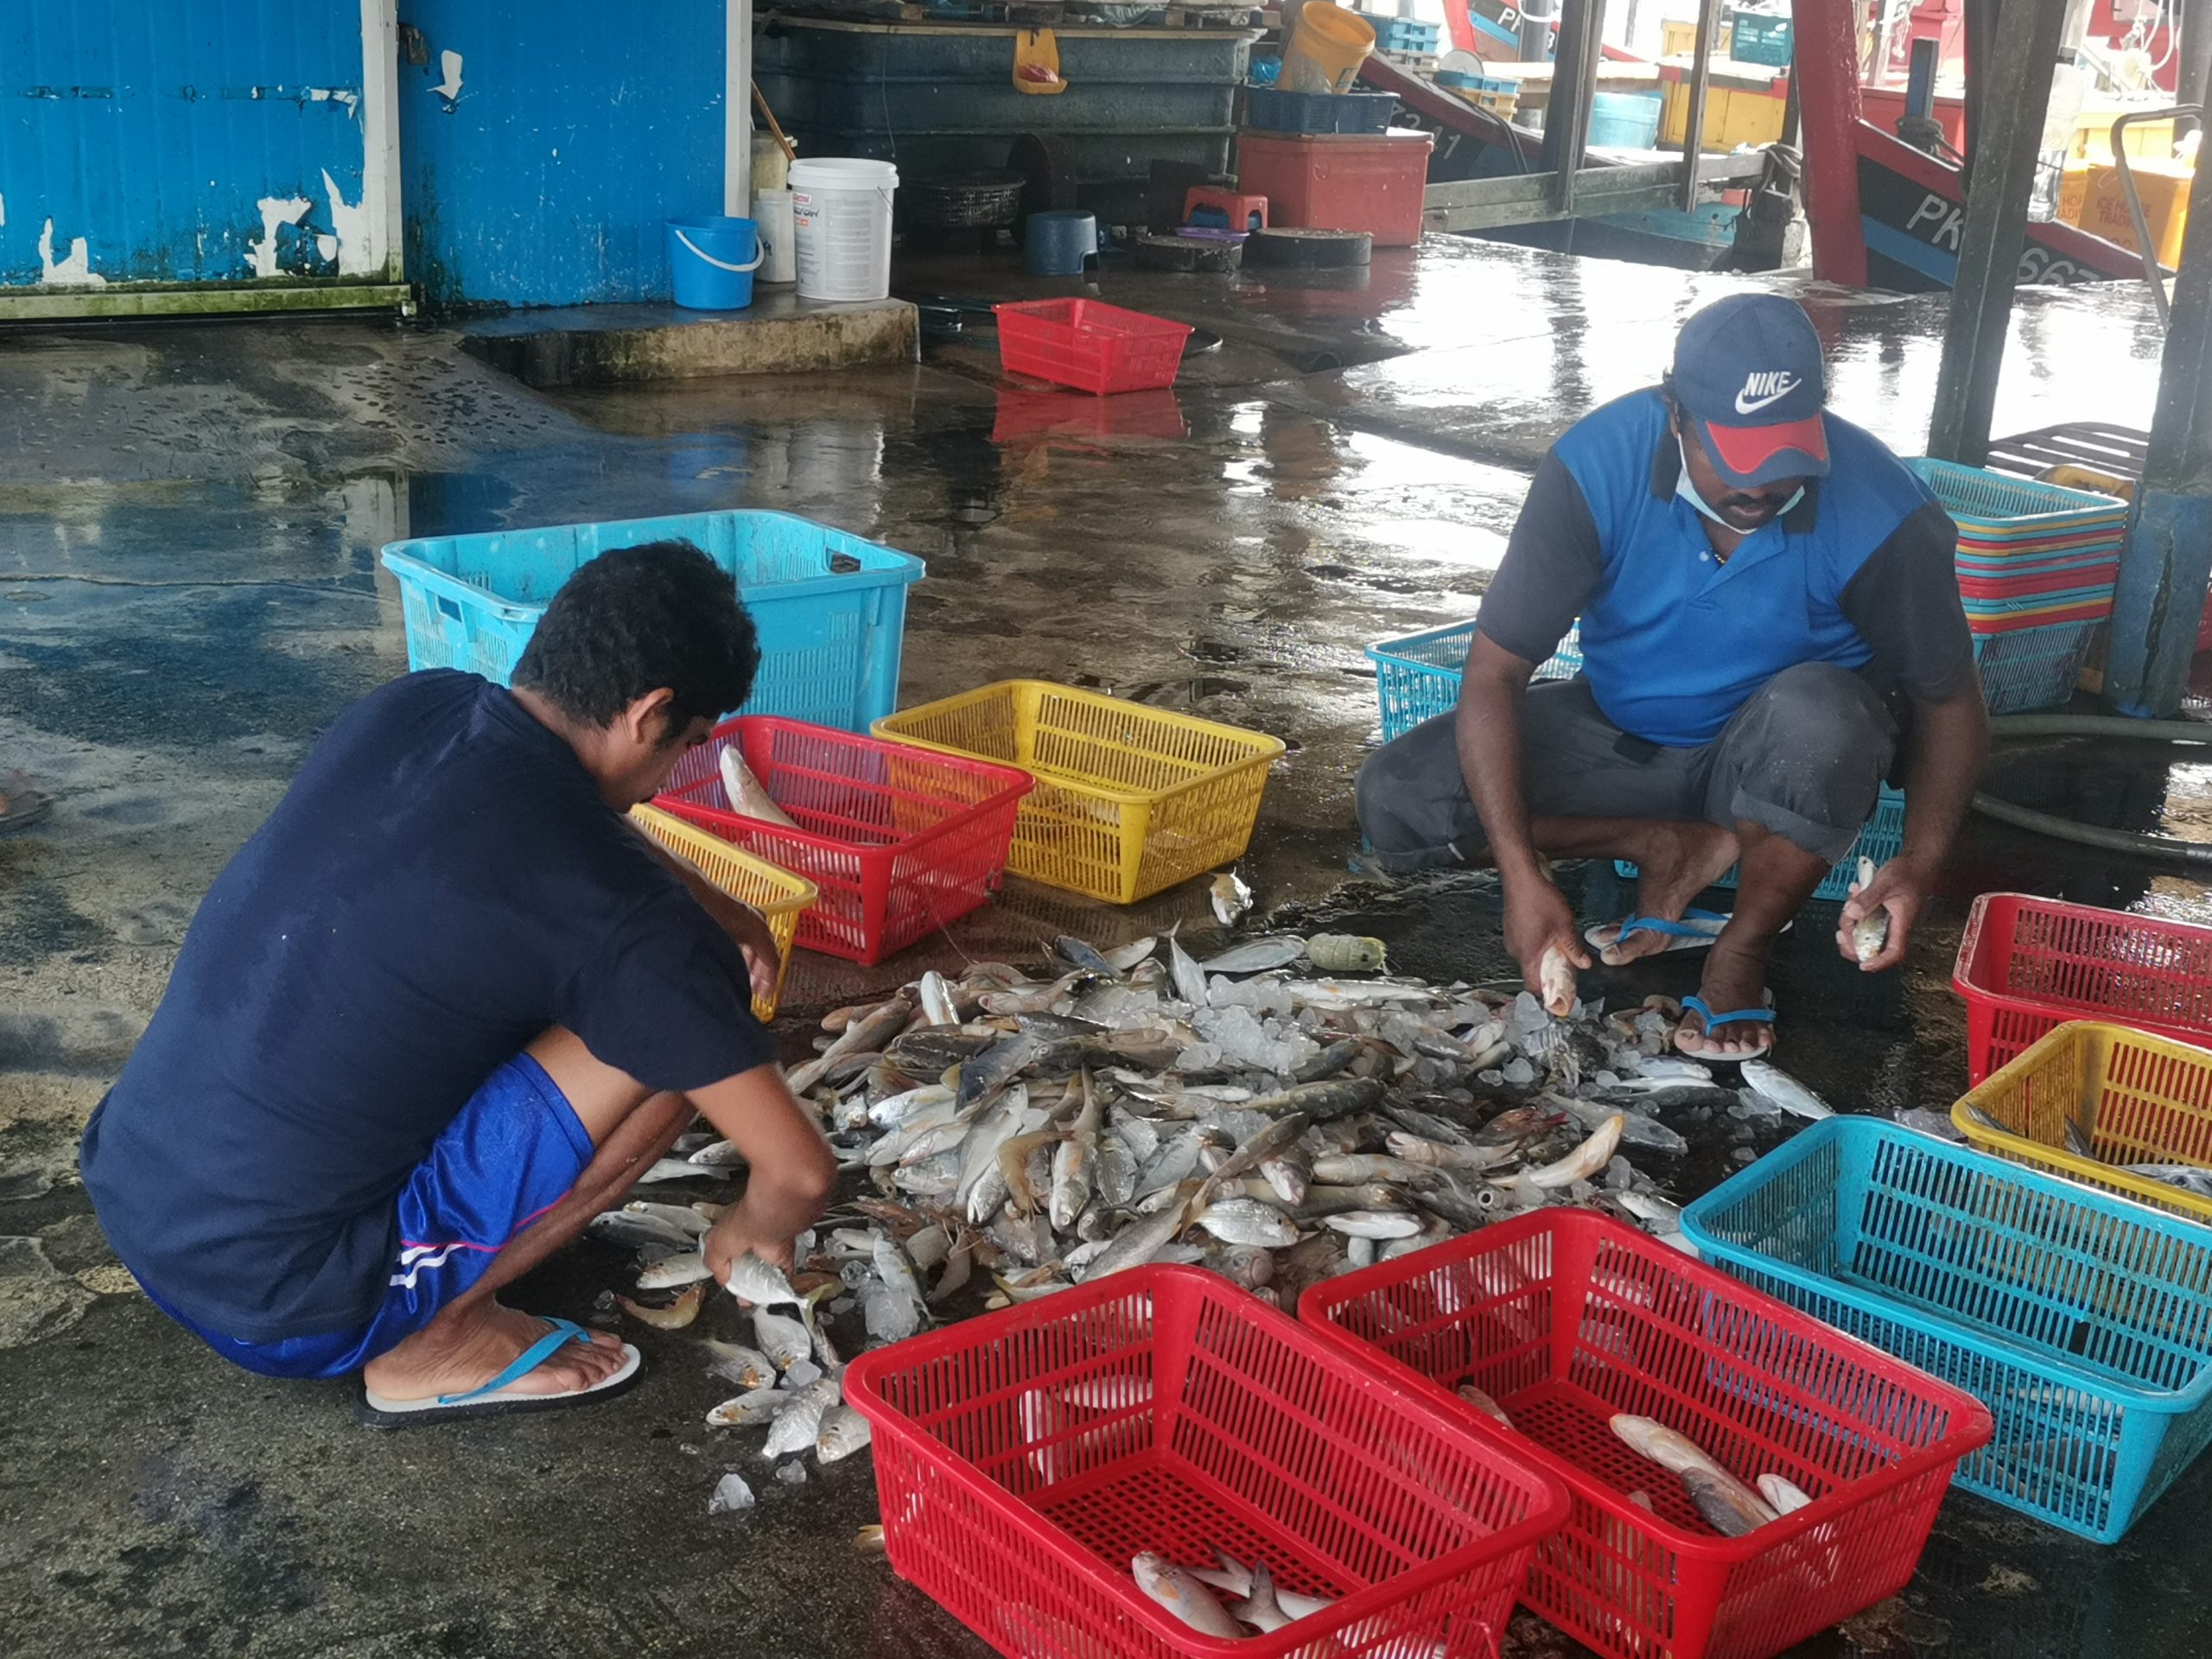 （大北马）海上执法加强及风浪大 渔民少出海 市场大缺鱼获 